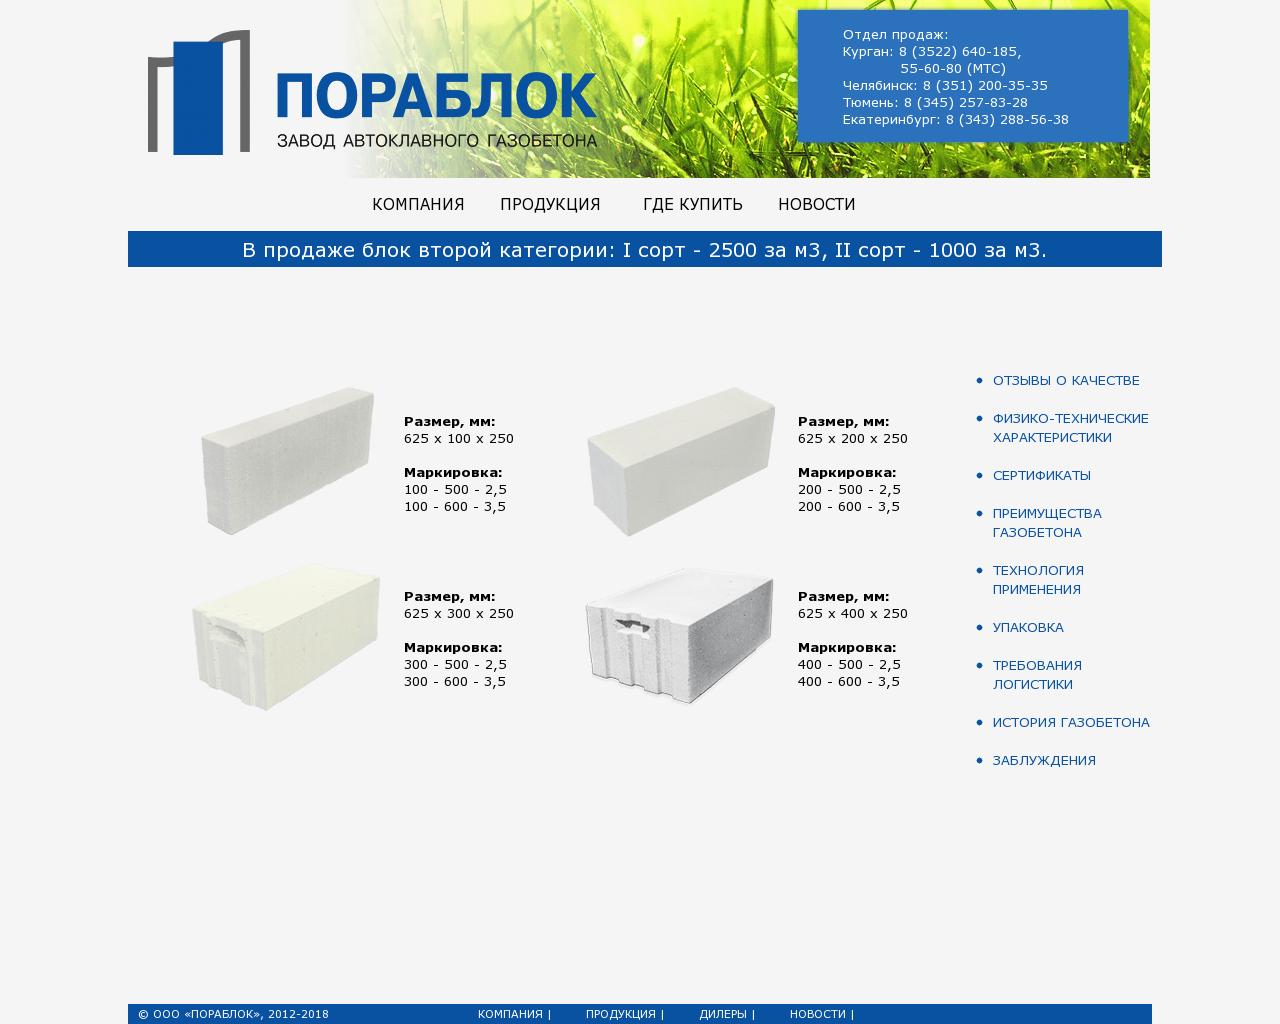 Изображение сайта porablok.ru в разрешении 1280x1024